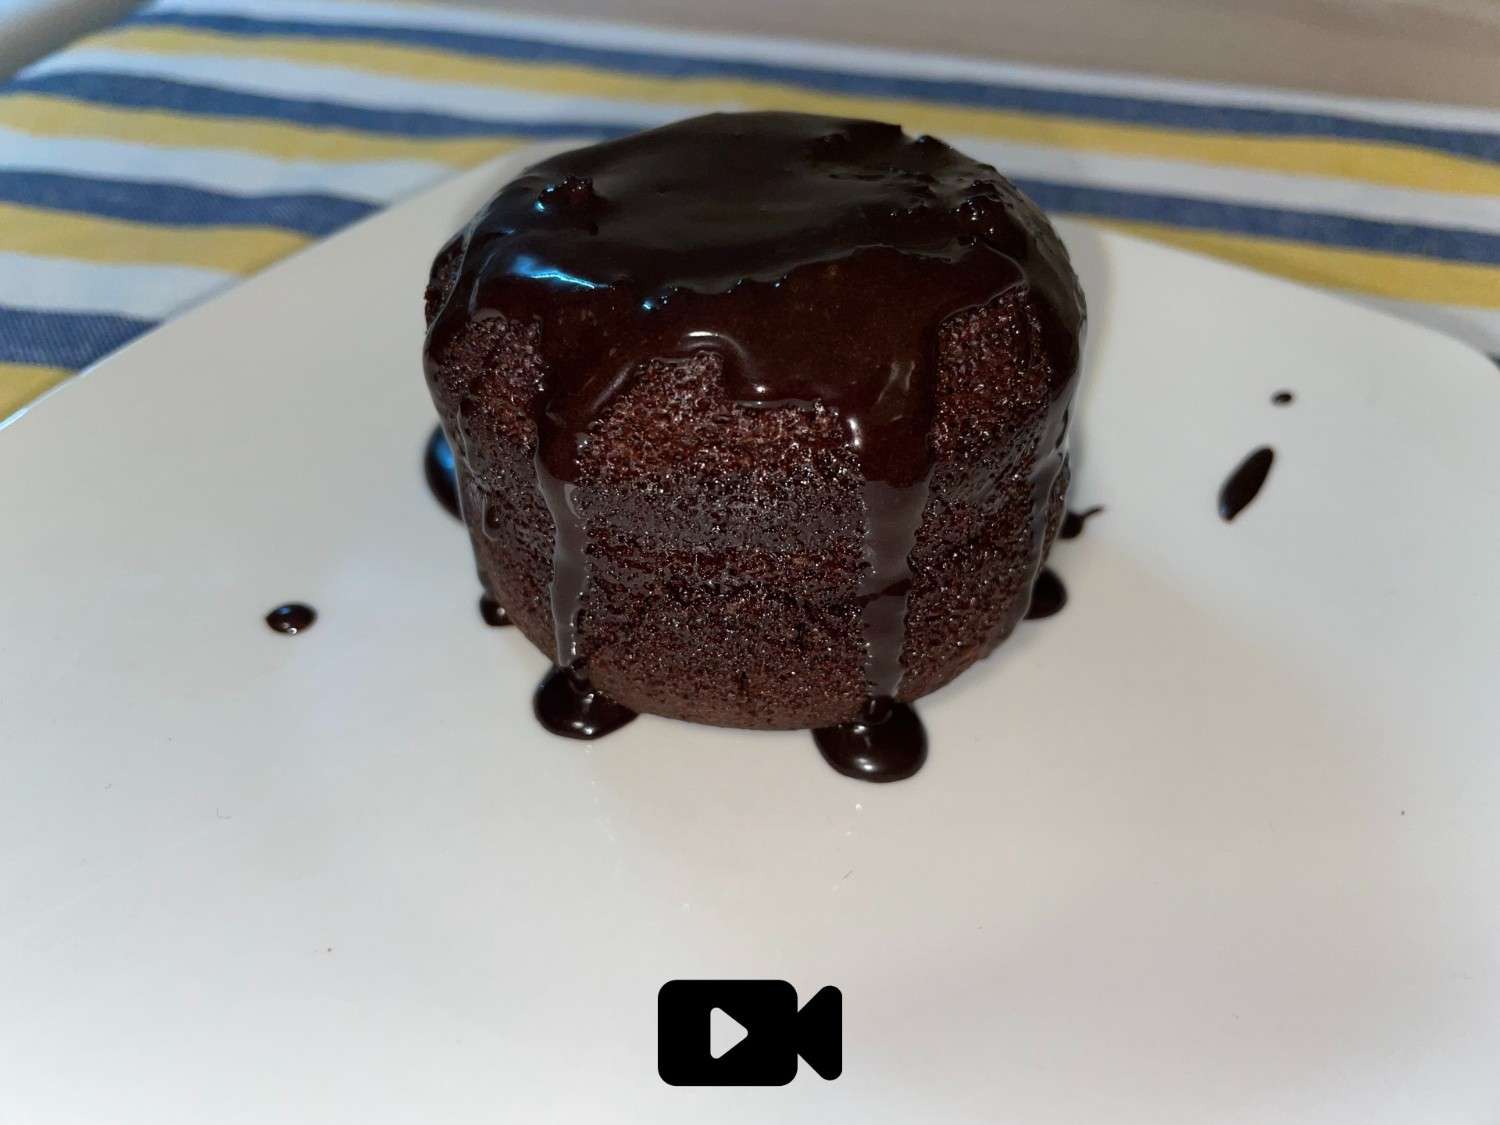 Συνταγή για ατομικό κέικ σοκολάτας με γλάσο σοκολάτας. Πανεύκολη συνταγή που θα την φτιάξετε σε λίγα μόνο λεπτά.